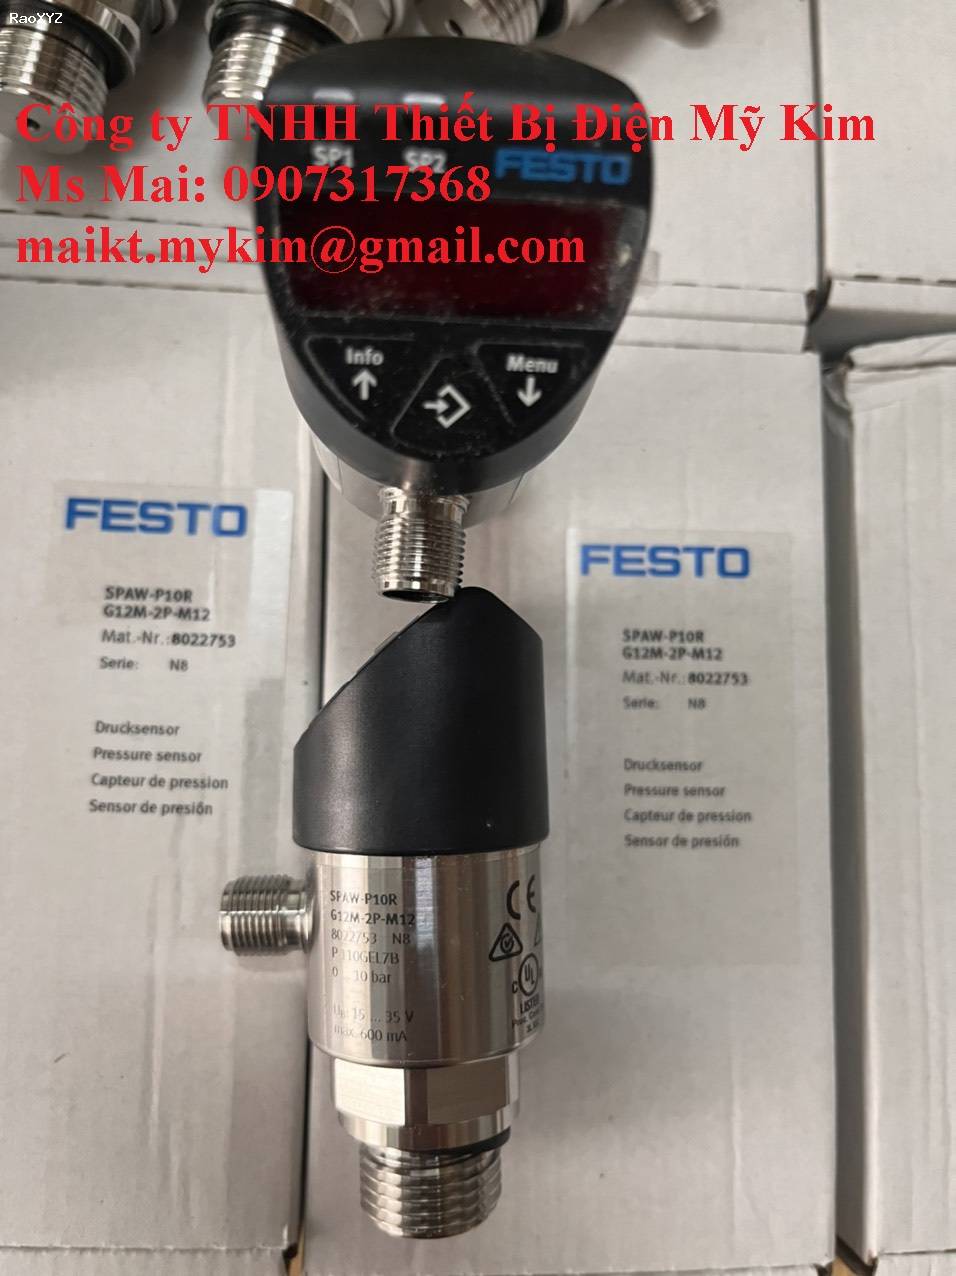 Sensor Festo SPAW-P10R-G12M-2P-M12 - Thietbidienmykim.com